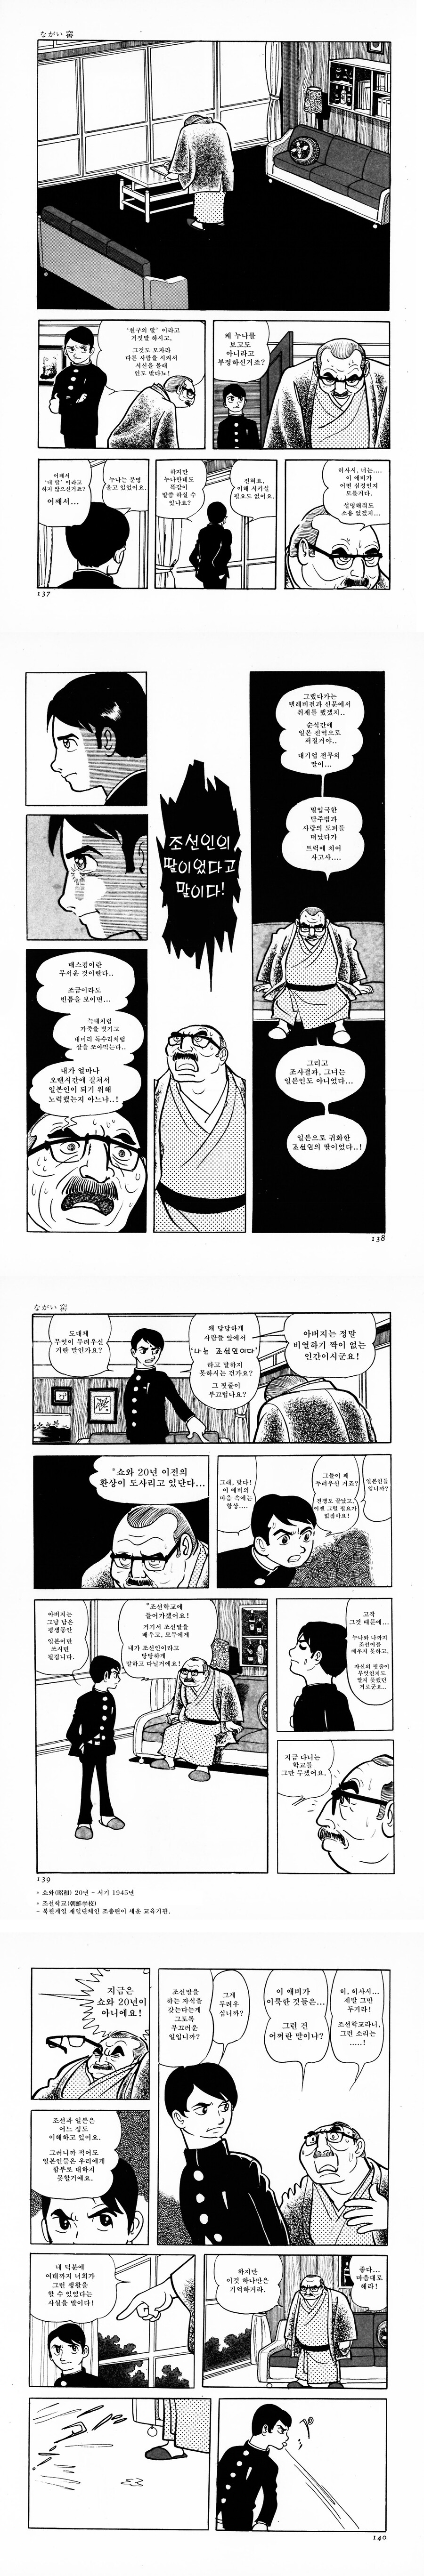 어떤 일본 만화가가 그린 해방 후 조선인들의 삶. manga